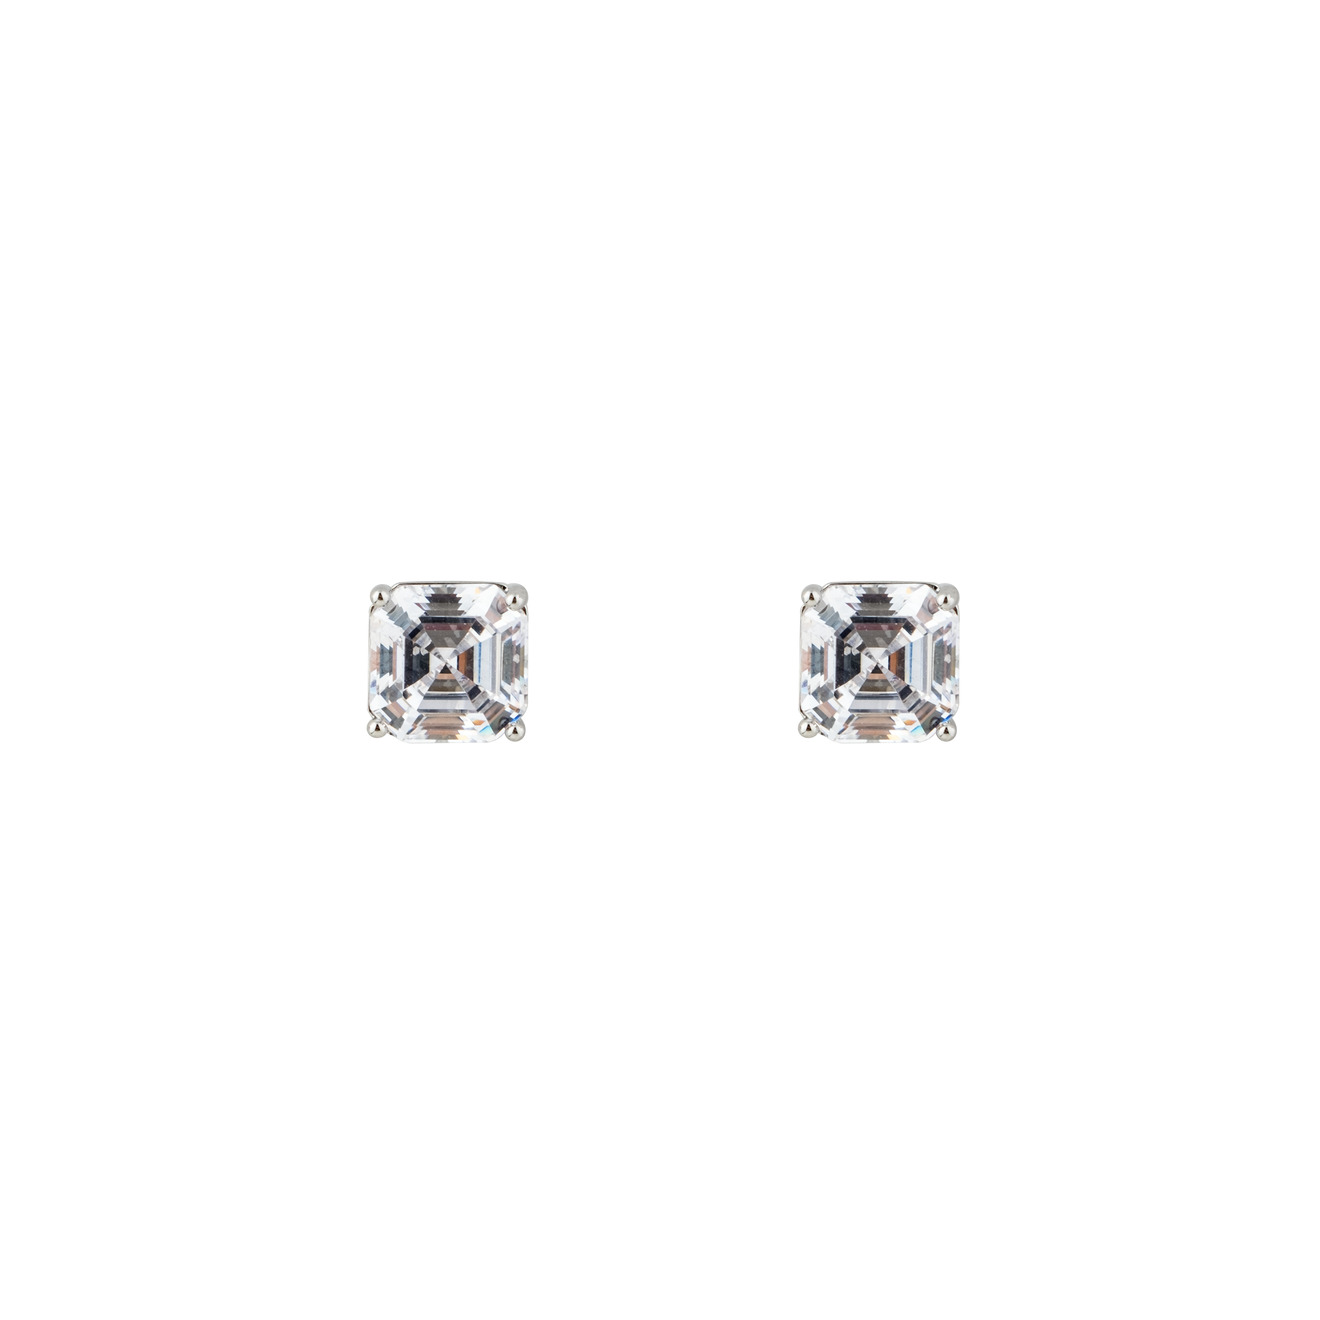 Herald Percy Серебристые серьги с белыми кристаллами herald percy серебристые серьги звезды с кристаллами